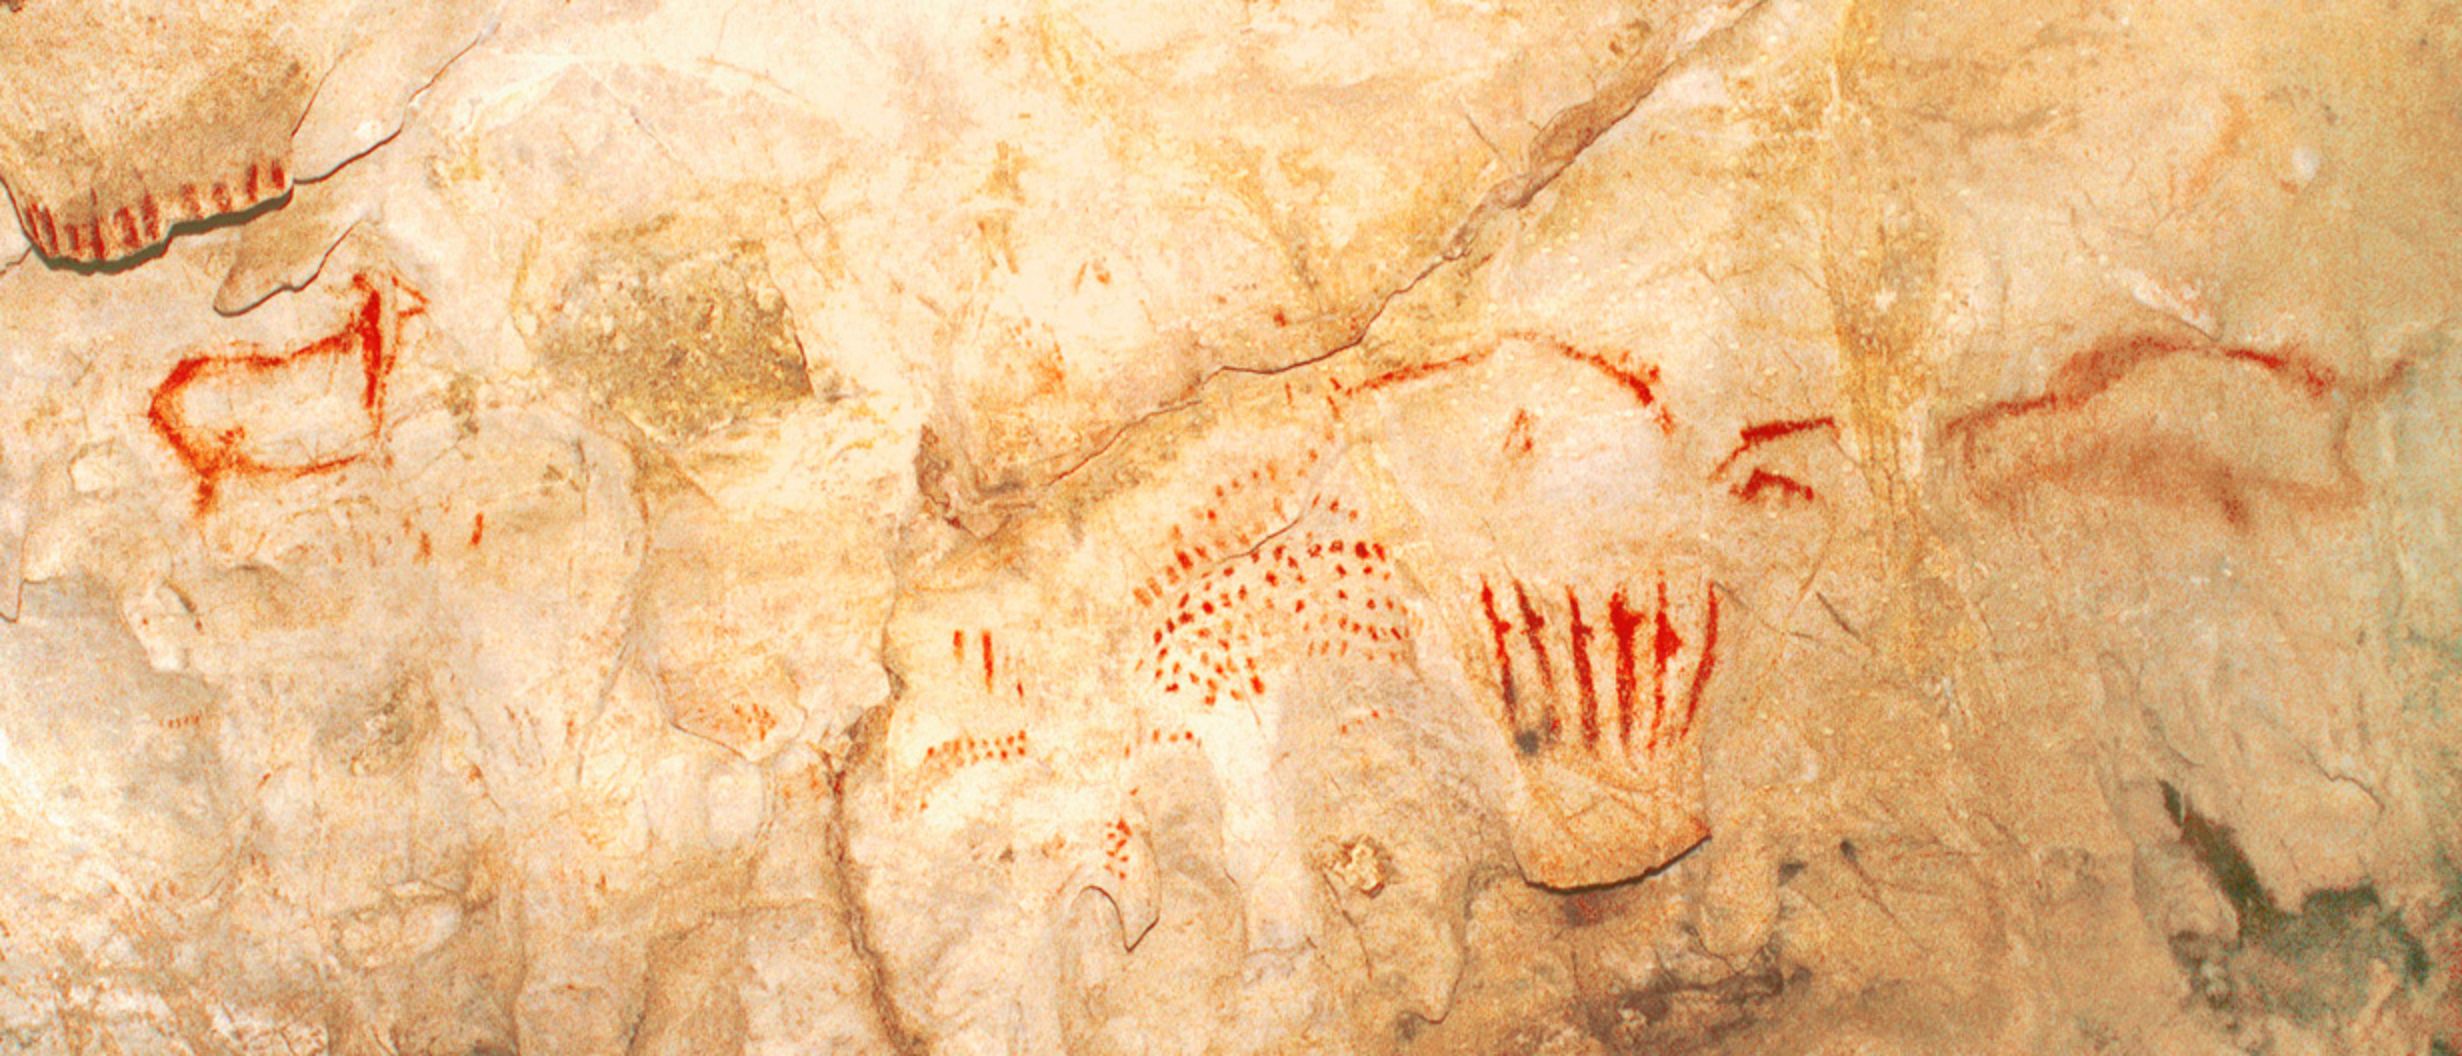 Cueva de El Pindal